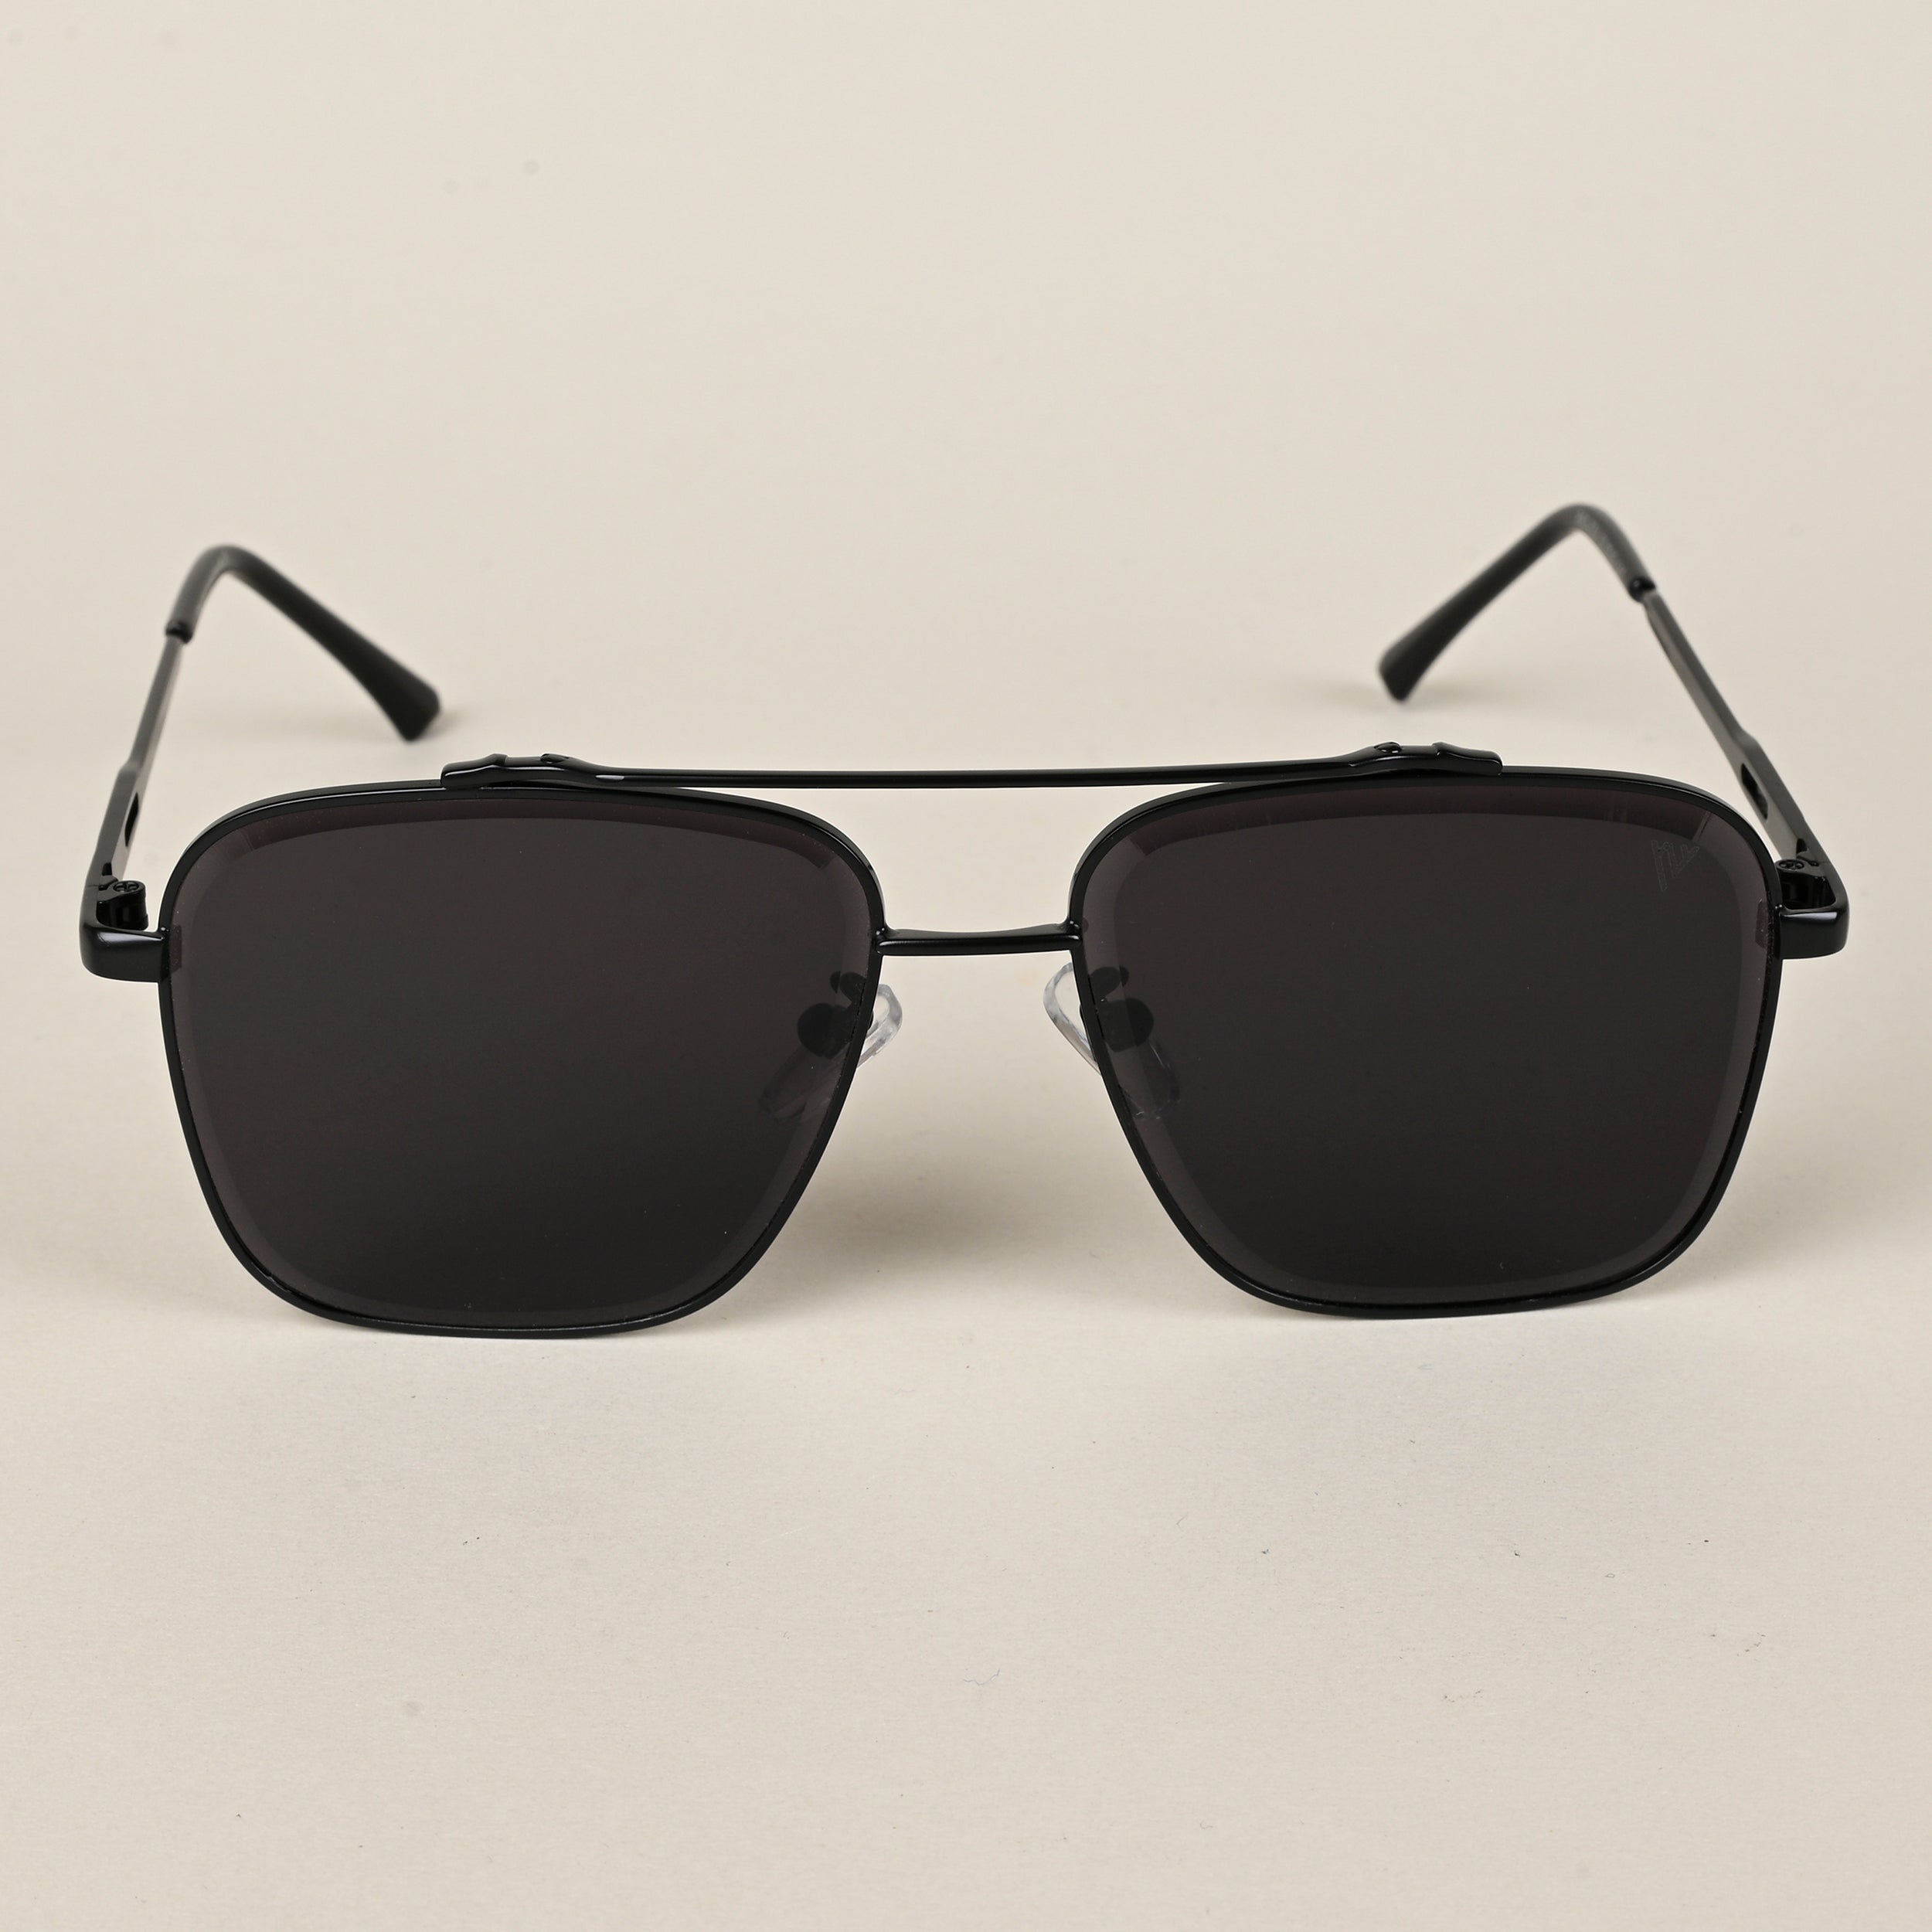 Voyage Aviator Sunglasses for Men & Women (Black Lens | Black Frame  - MG5196)